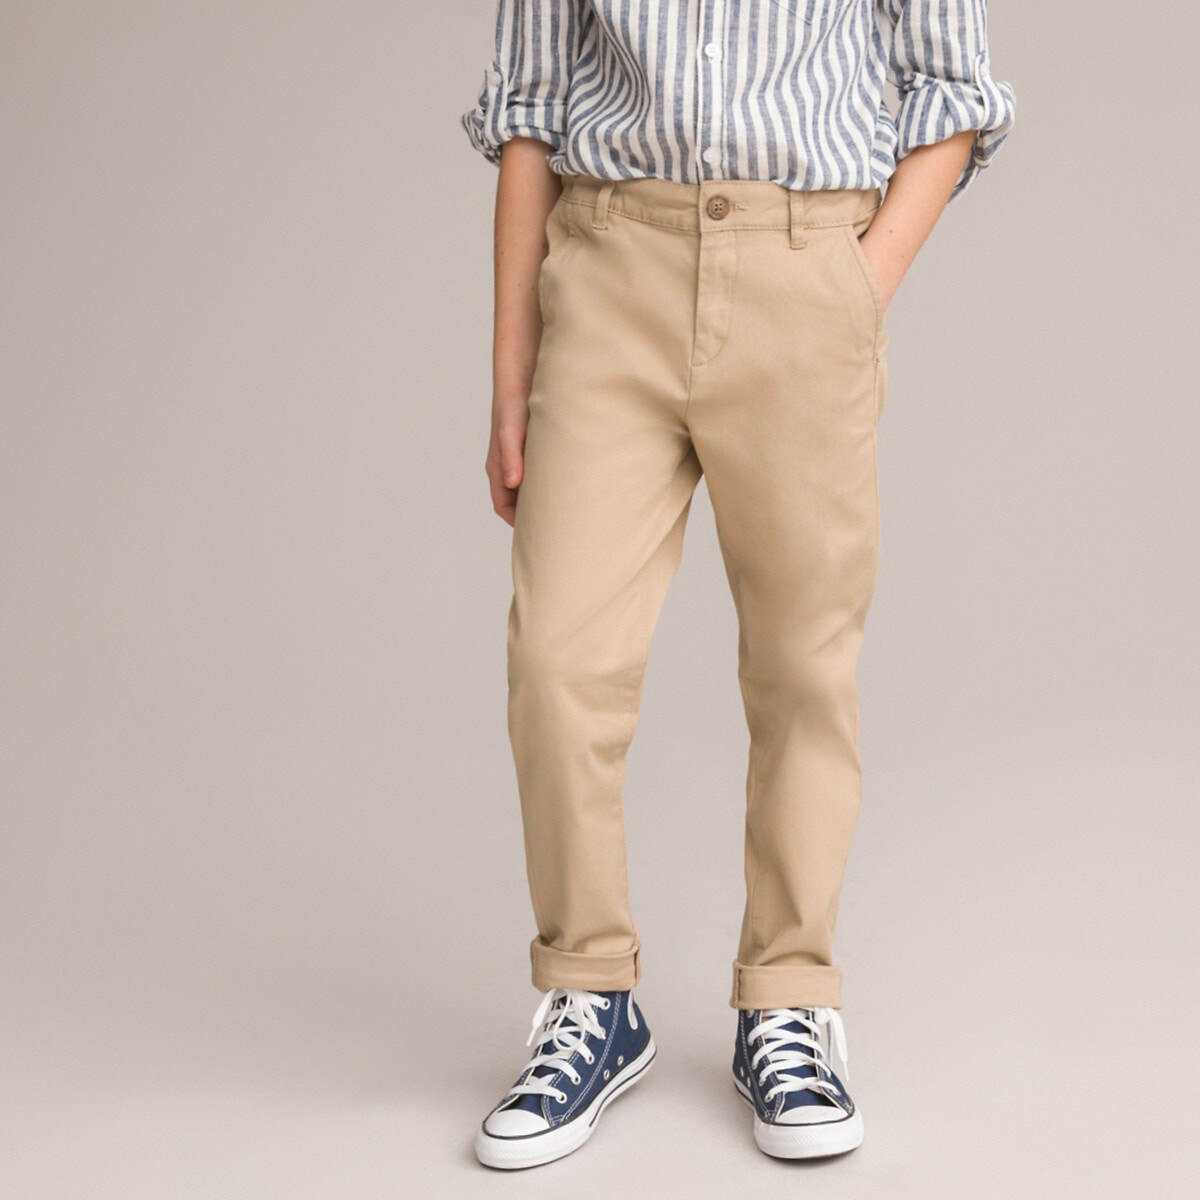 ΠΑΙΔΙ | Παντελόνια Παντελόνι με λοξές τσέπες, 3-12 ετών